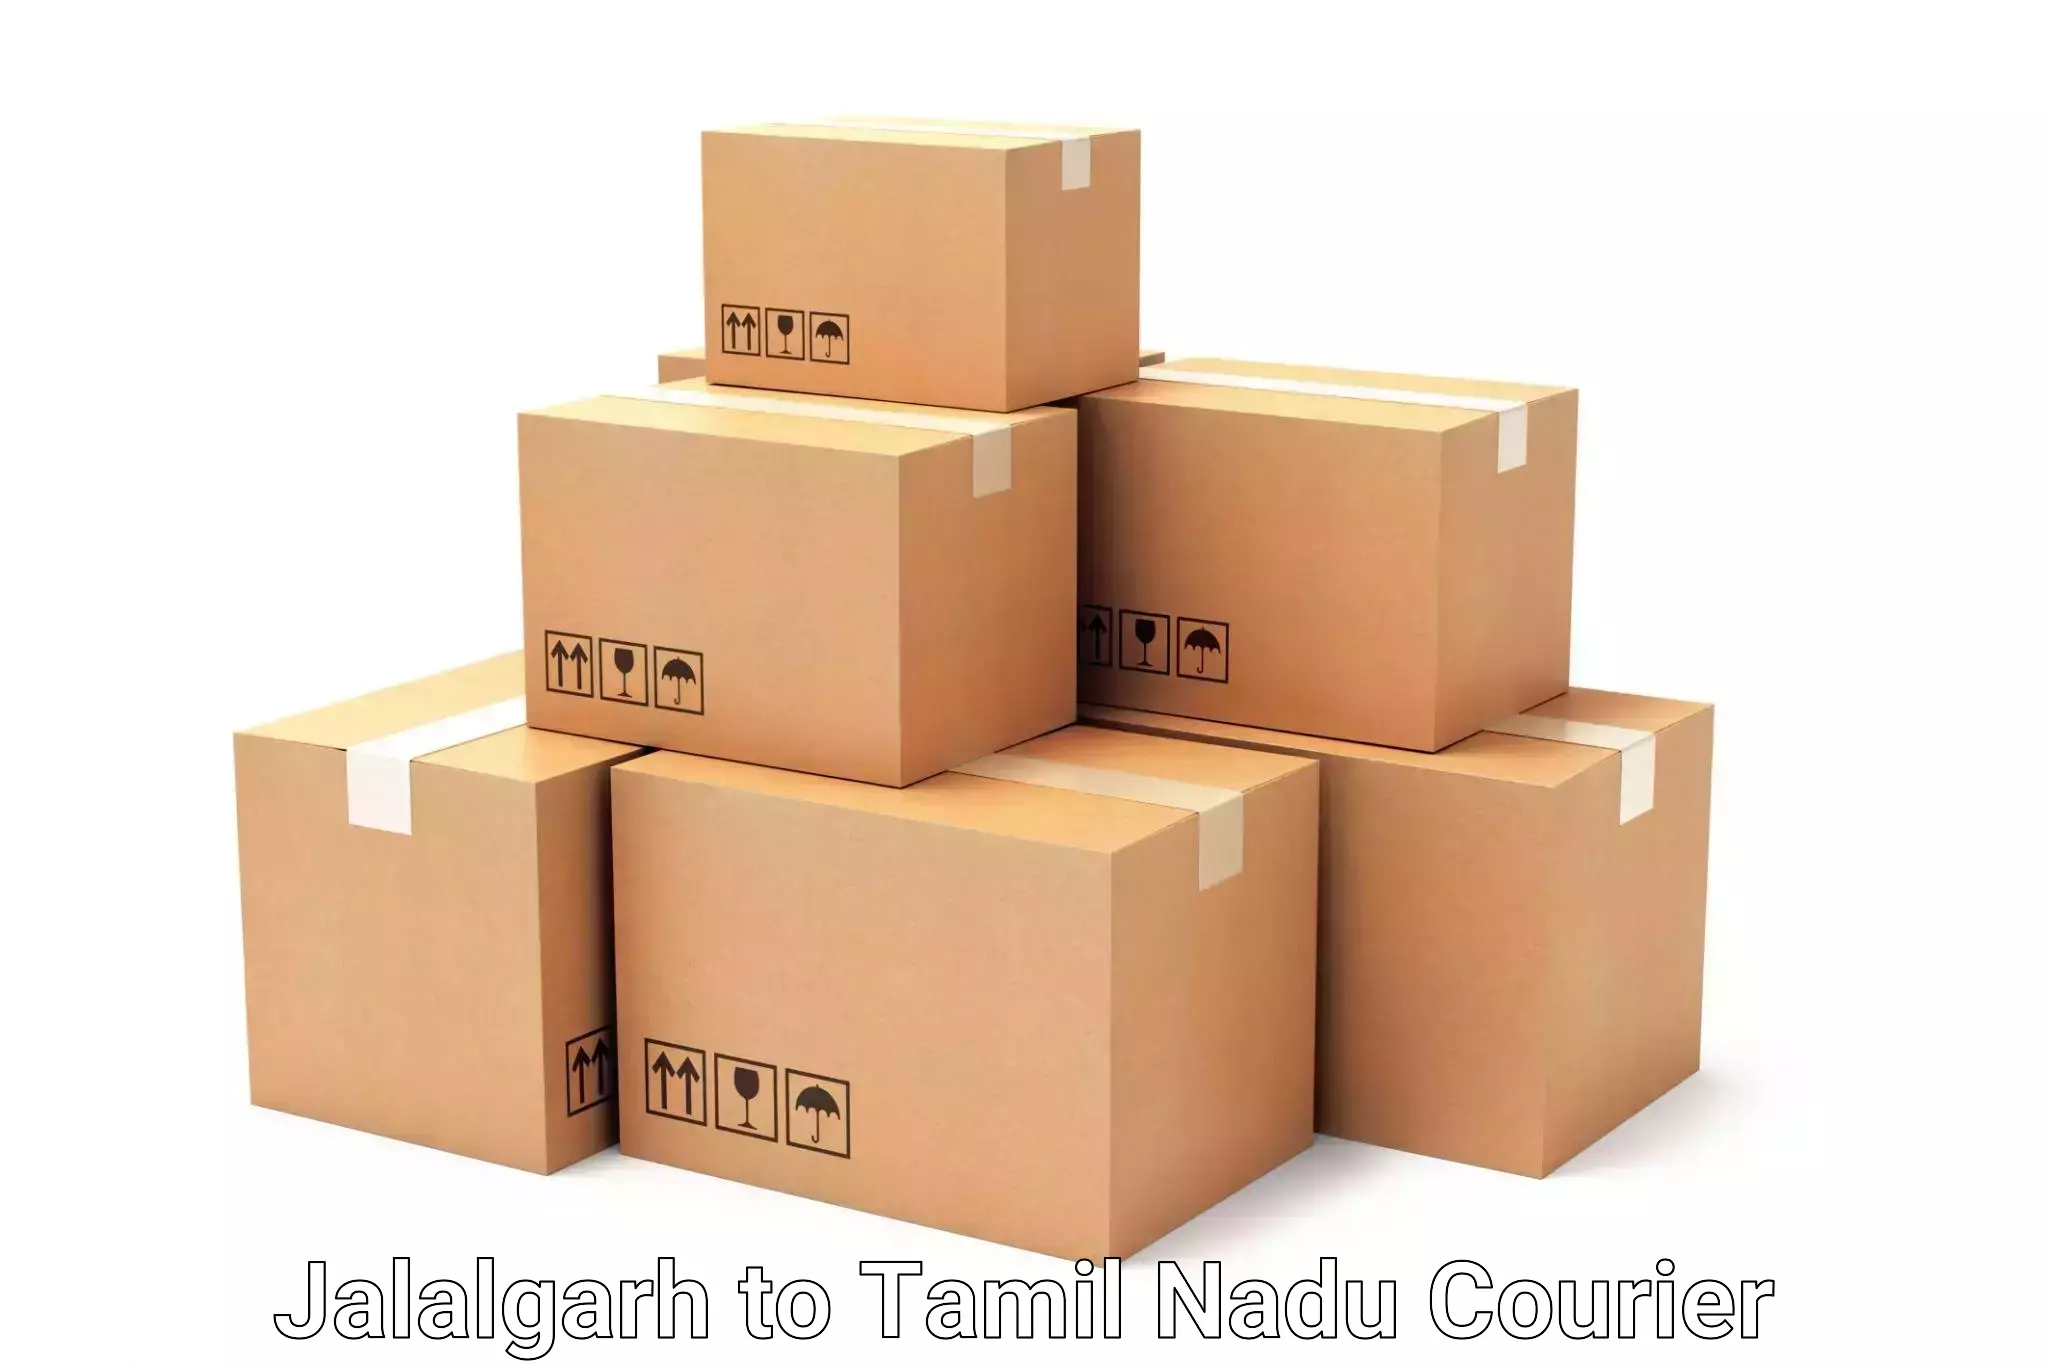 Luggage delivery calculator Jalalgarh to Harur